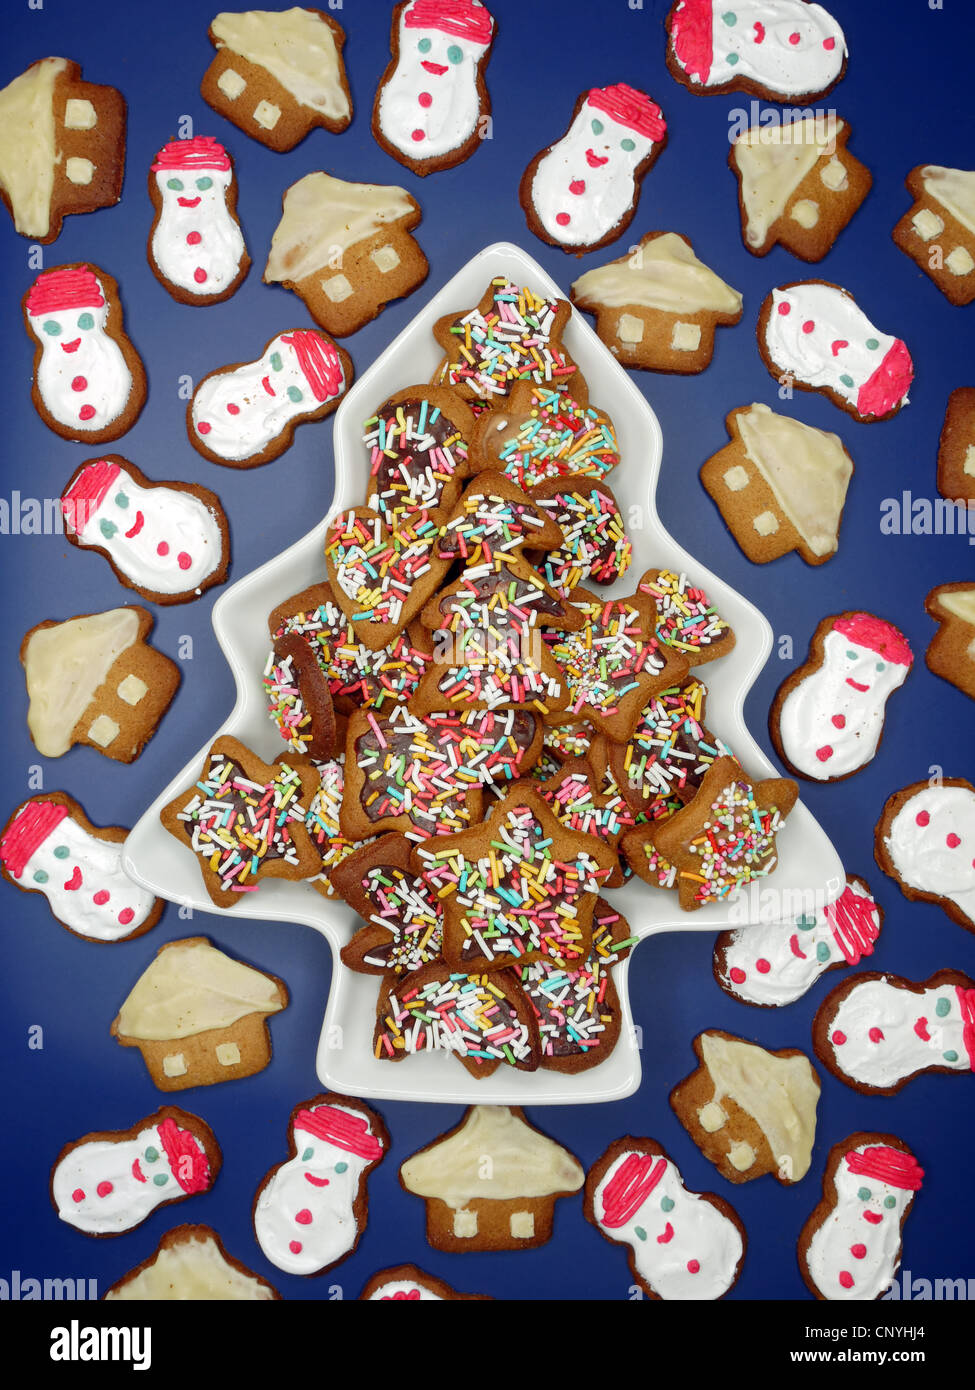 Des formes variées de gingerbread cookies shot de dessus sur fond bleu foncé Banque D'Images